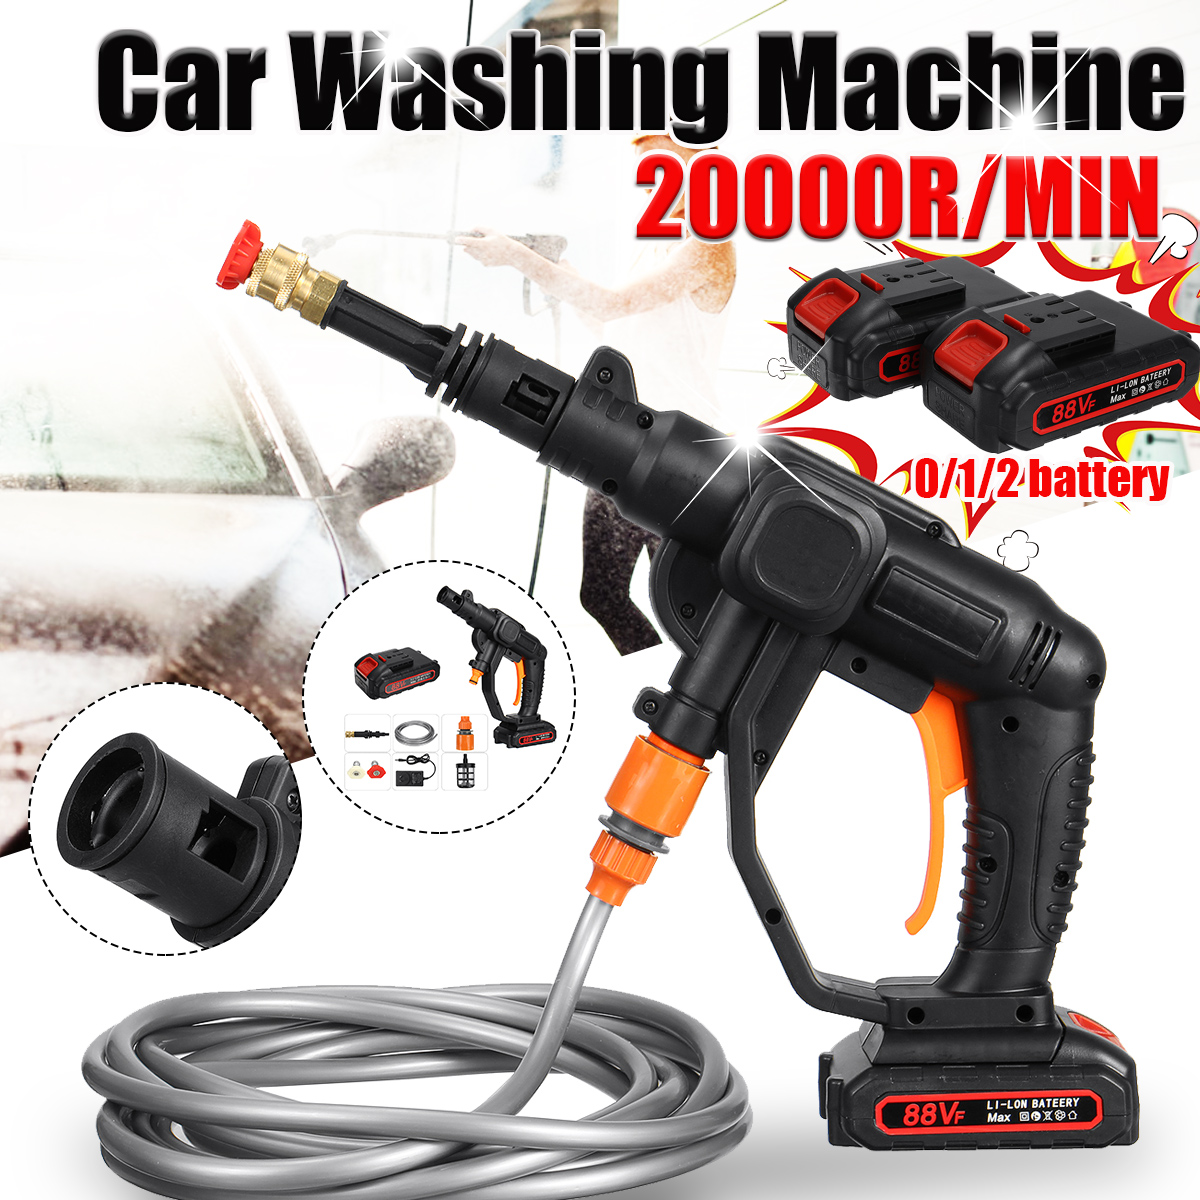 24V-507psi-Wireless-High-Pressure-Washer-Cleaner-Car-Washing-Machine-Water-Spray-Guns-W-None12-Batte-1872424-1